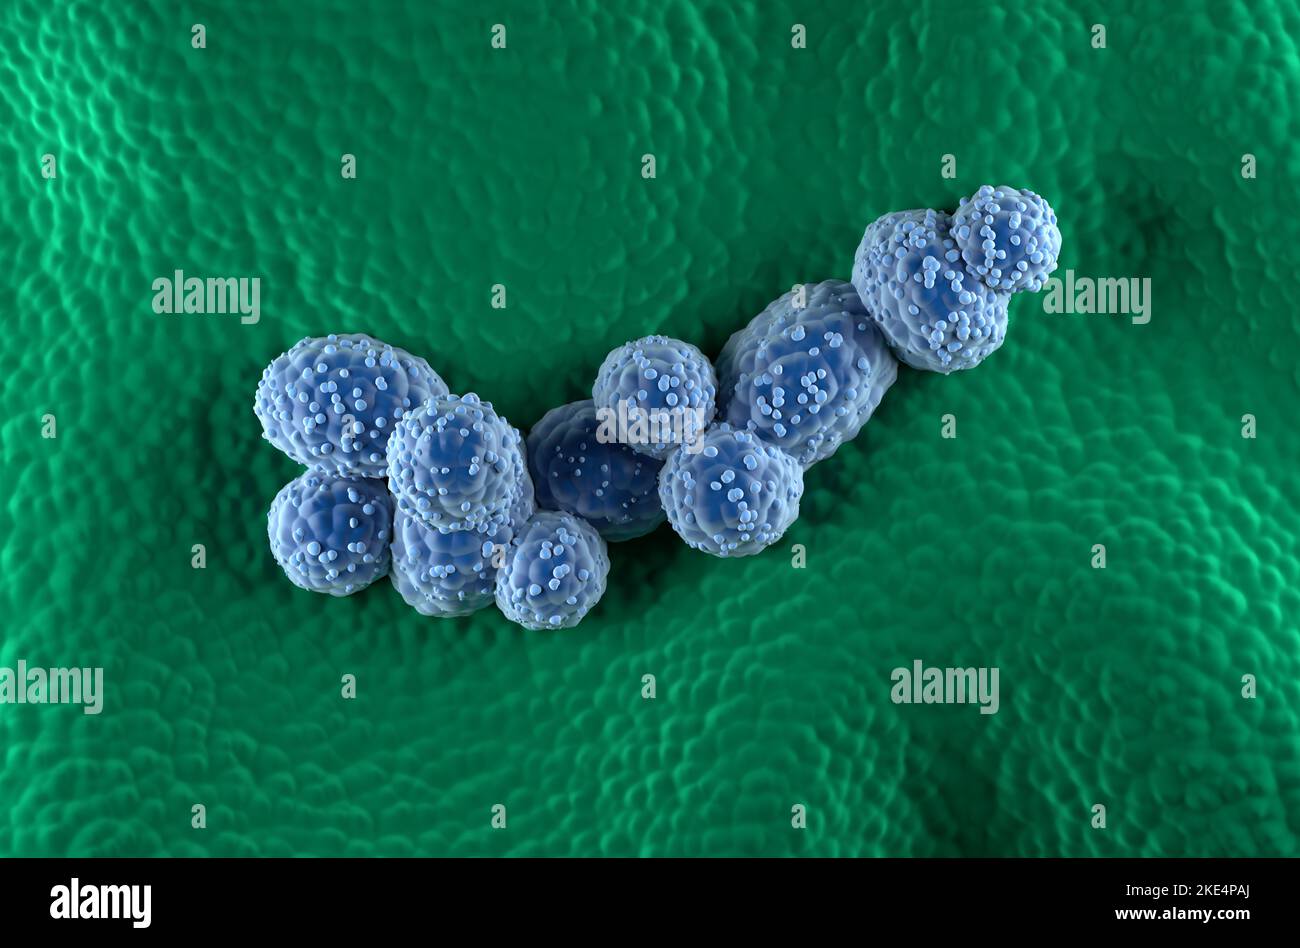 Prostatakrebszellen im prostatischen Drüsenepithel - Draufsicht 3D Abbildung Stockfoto